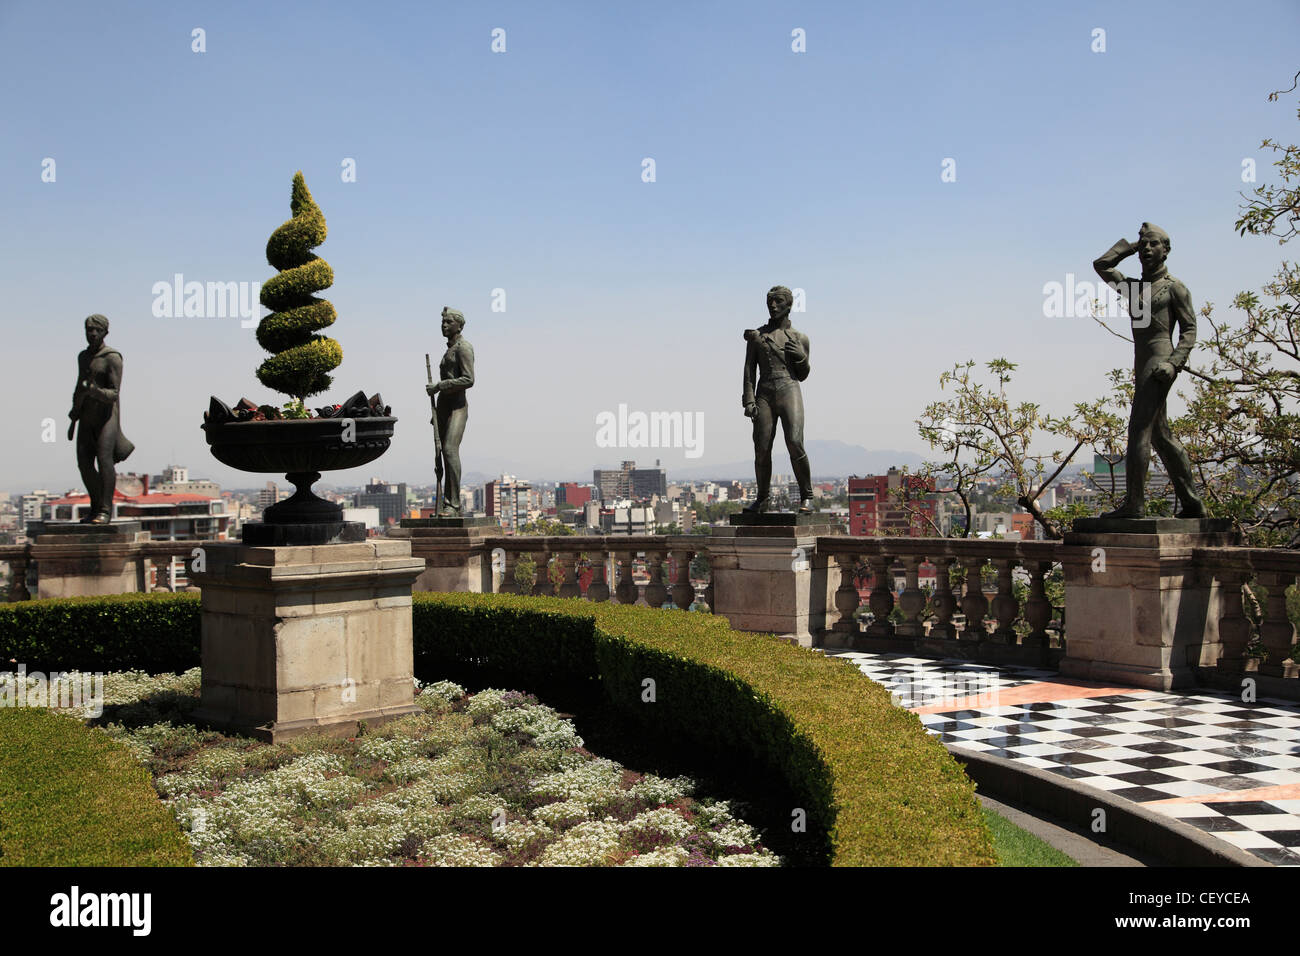 El Castillo de Chapultepec, château de Chapultepec, le parc de Chapultepec, Chapultepec, Mexico City, Mexico Banque D'Images